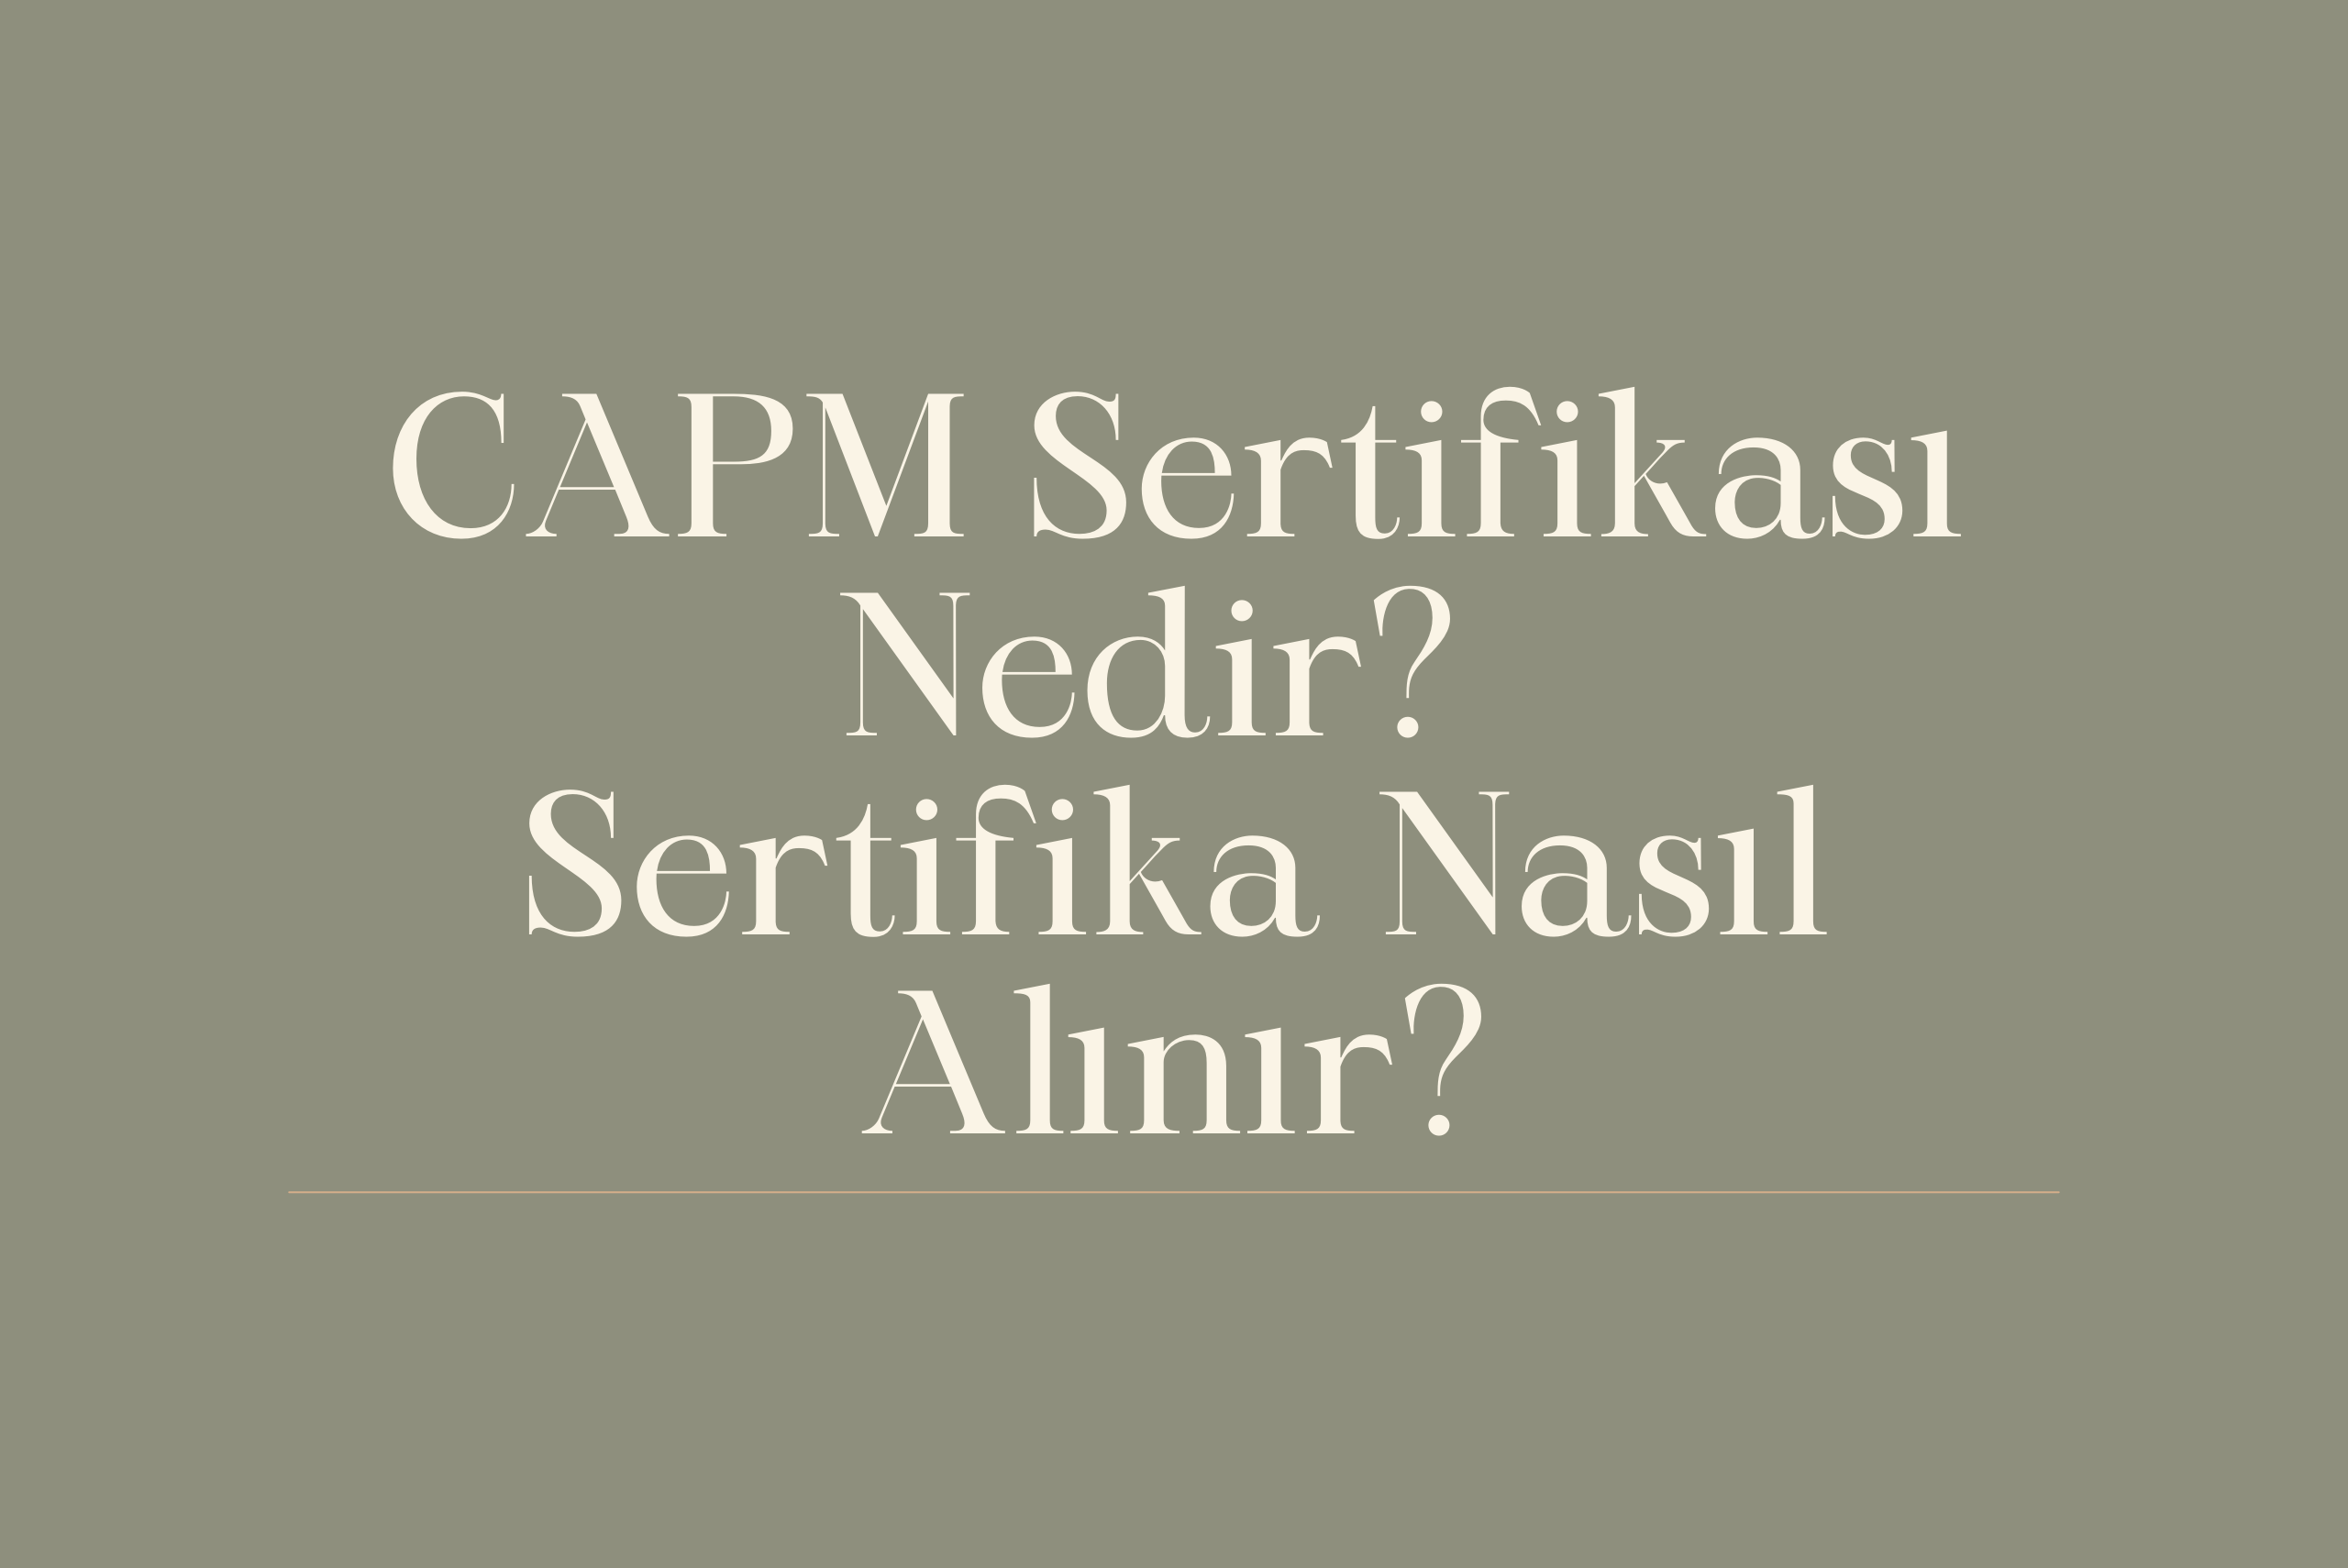 CAPM sertifikası nedir? Nasıl alınır? CAPM sınavı hakkında bilmeniz gereken tüm bilgiler bu yazıda.